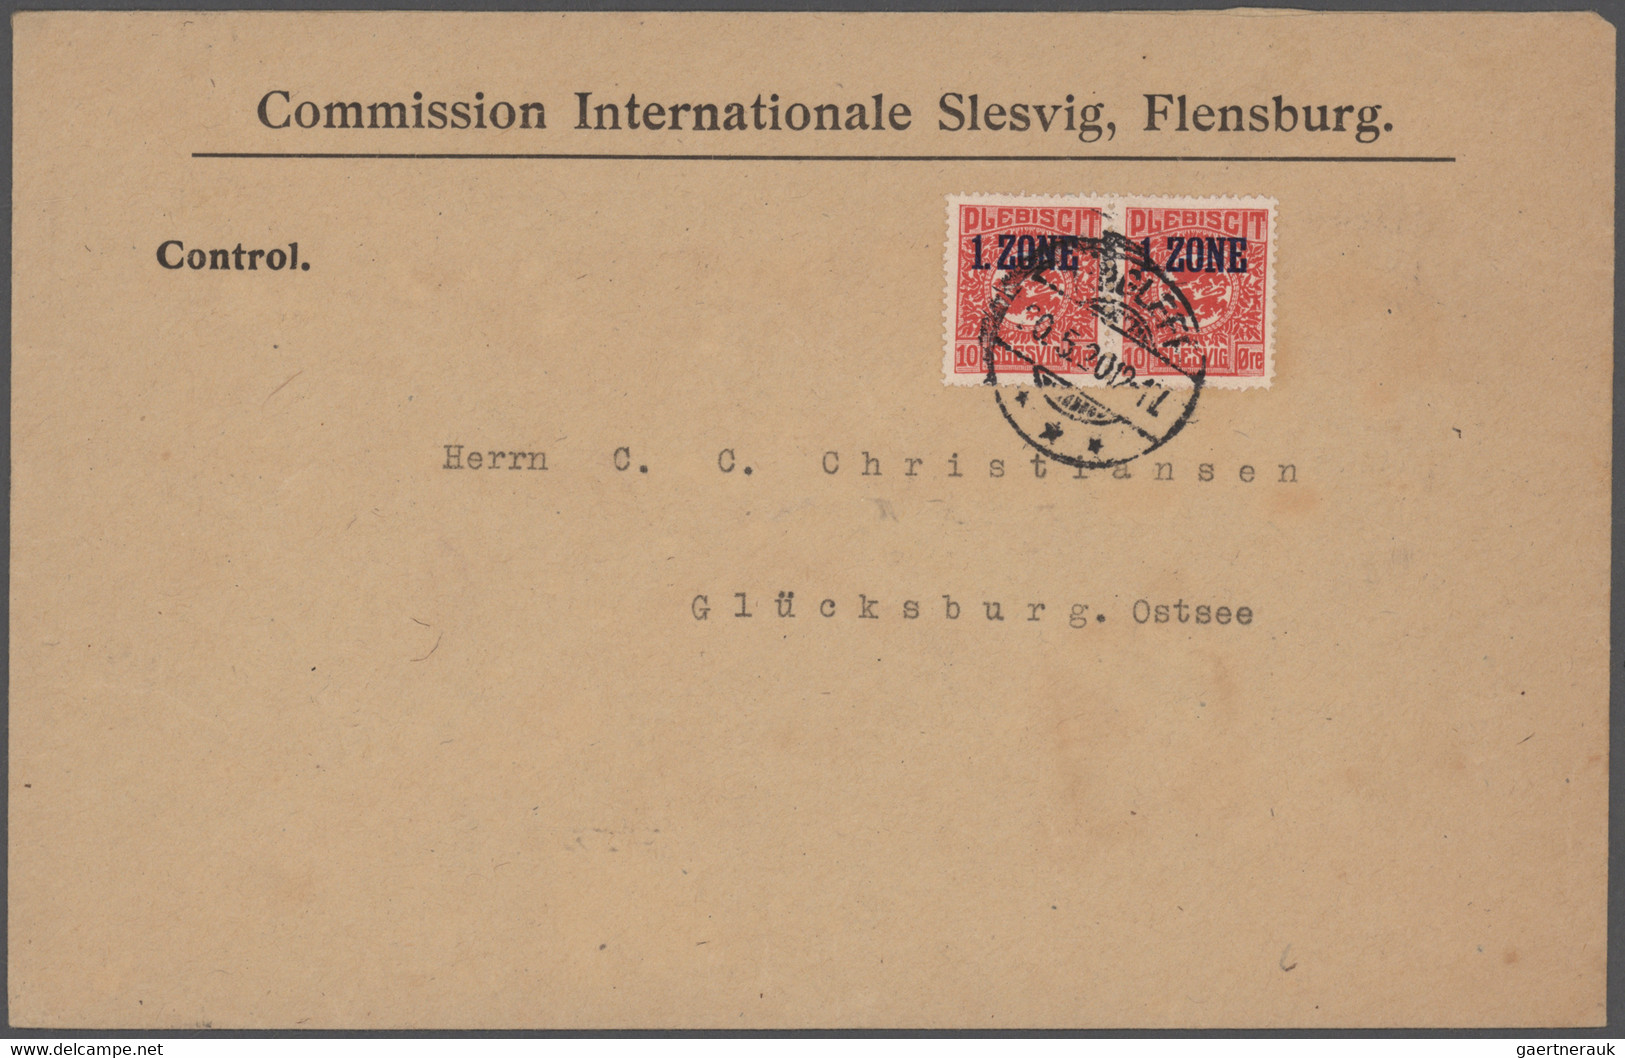 Deutsche Abstimmungsgebiete: 1920/1921 (ca.), 18 Belege mit u.a. Schleswig: Mi.Nr. 1/14 und 15/28 je